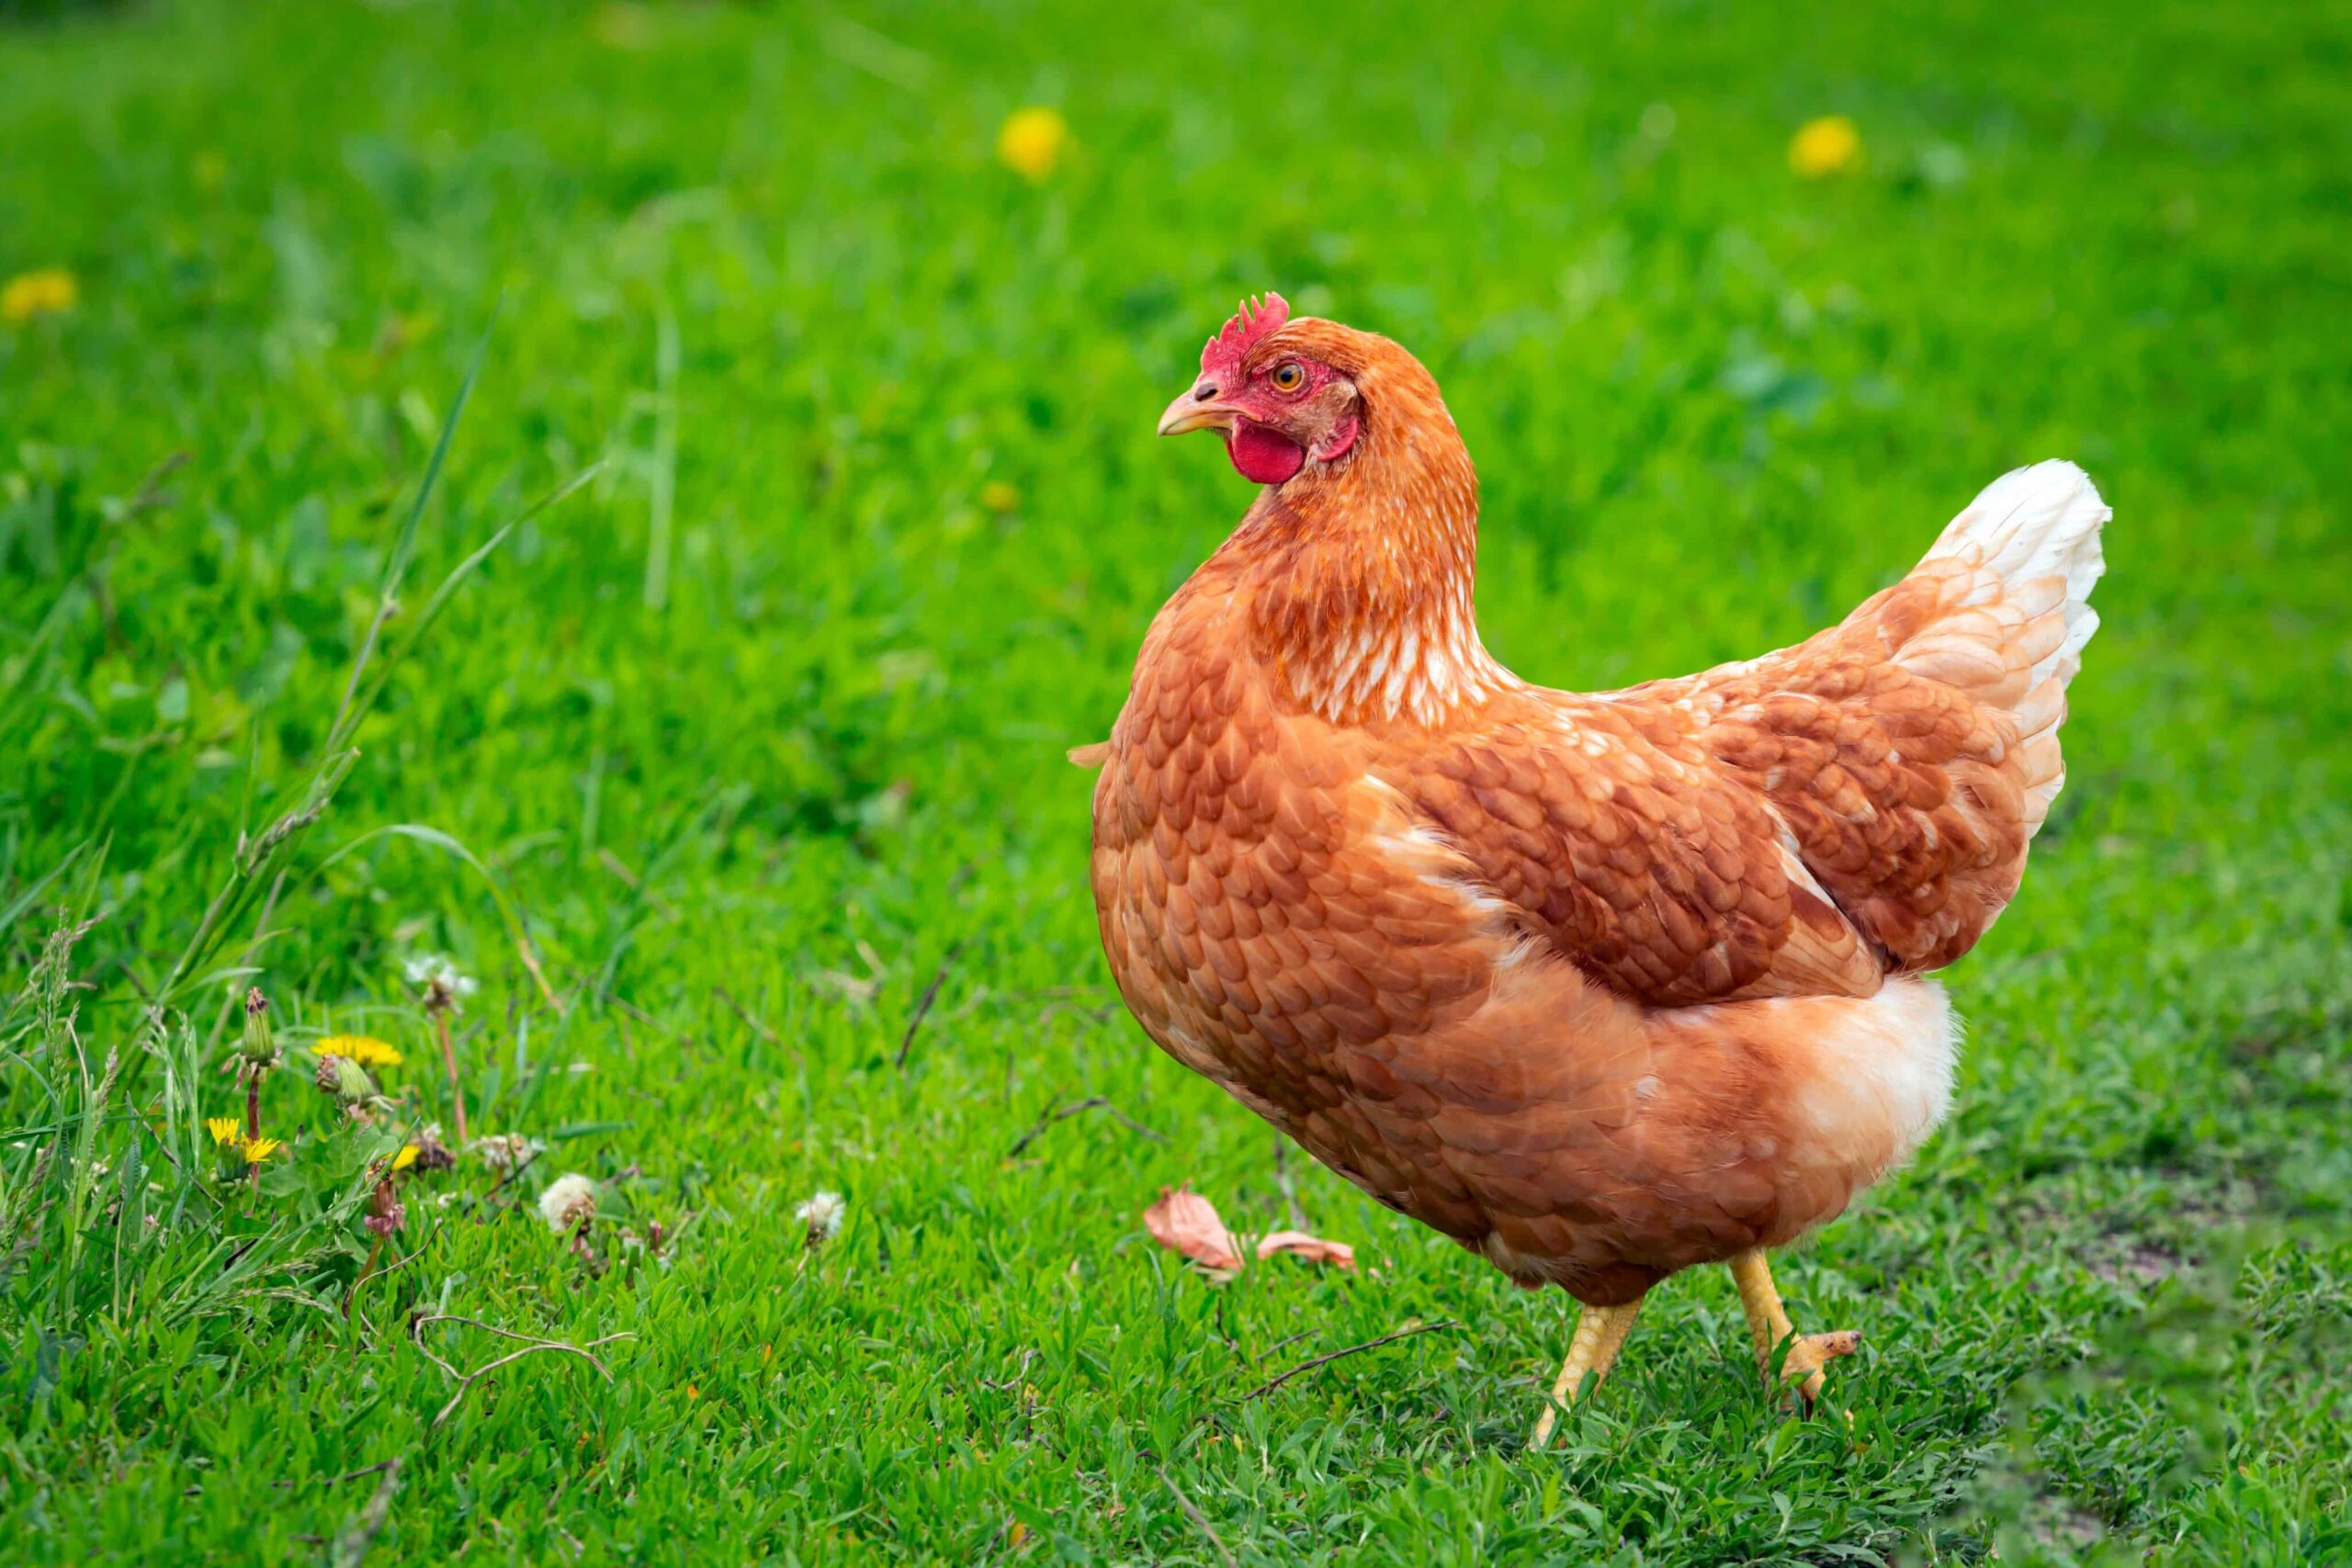 Farina di semi di canapa per galline Raccomandazione per l'approvazione federale